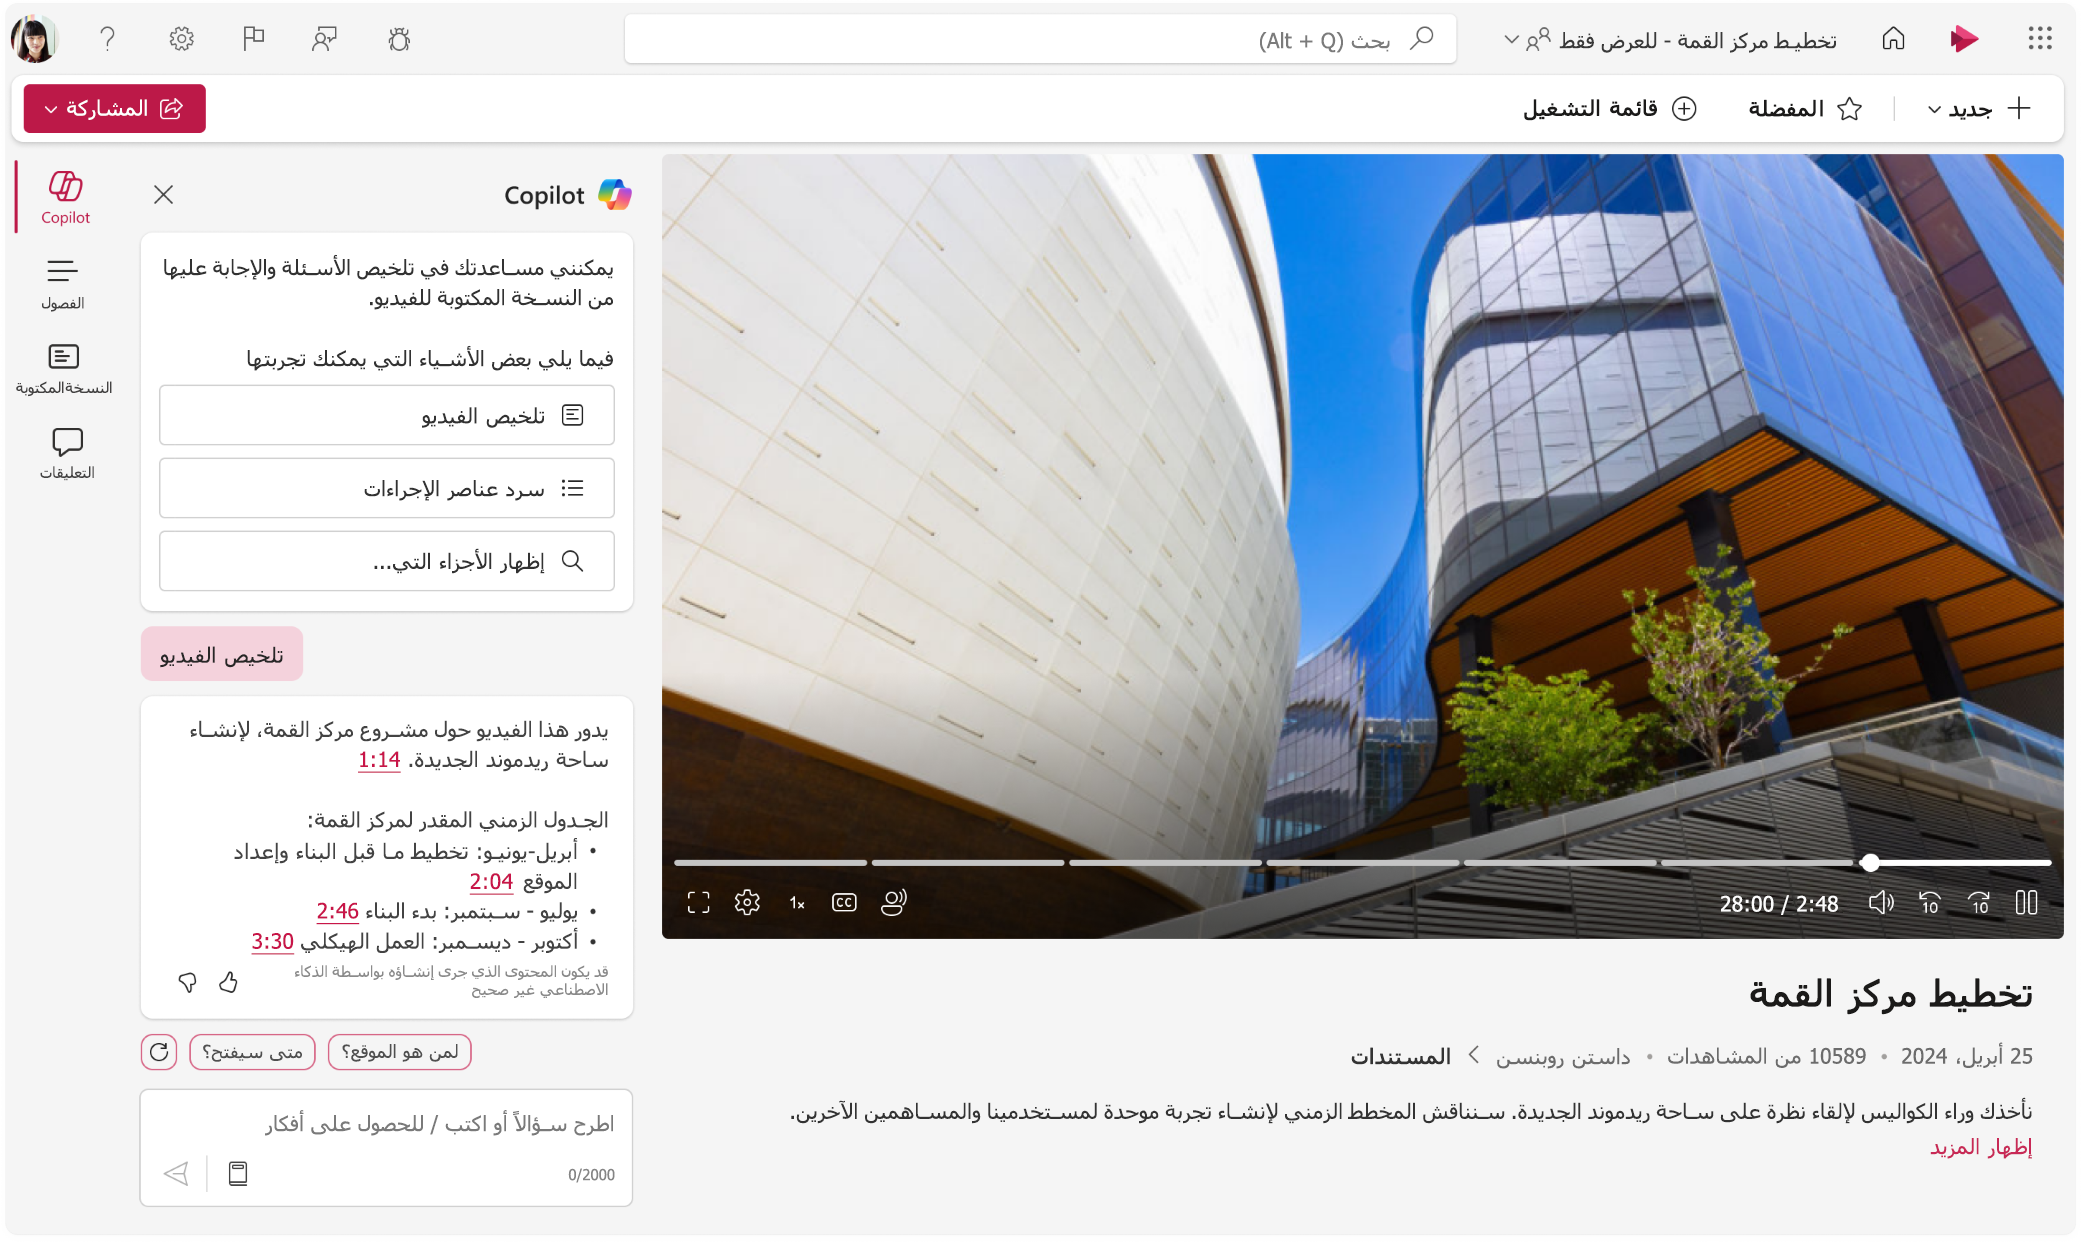 لقطة شاشة تعرض مشغل الفيديو Microsoft Stream مع عرض جزء Copilot.